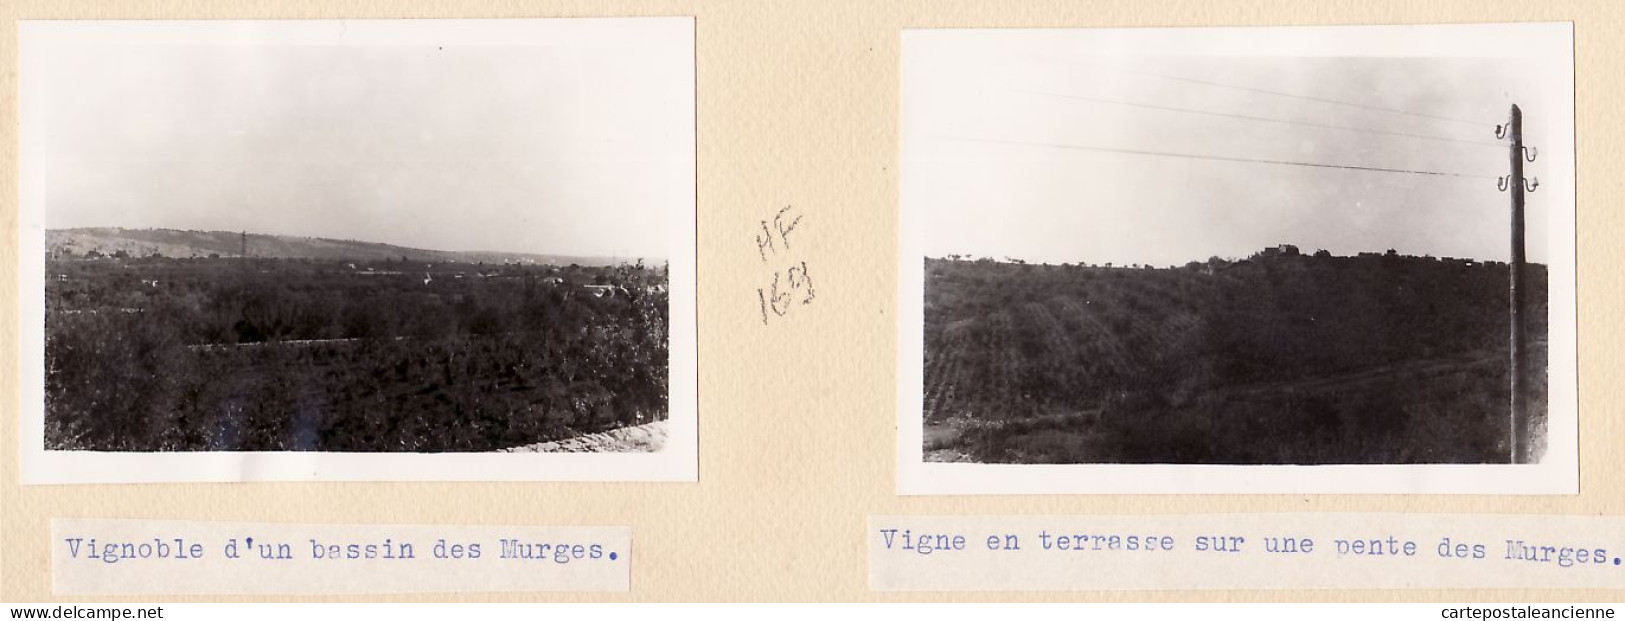 26773 / ⭐ ♥️ MURGES MURGE Vigneto Vasca Abbatto 1955 Italia Puglia 2 Fotografie 10x7 Vignes Vignoble Bassin Terrasse  - Luoghi